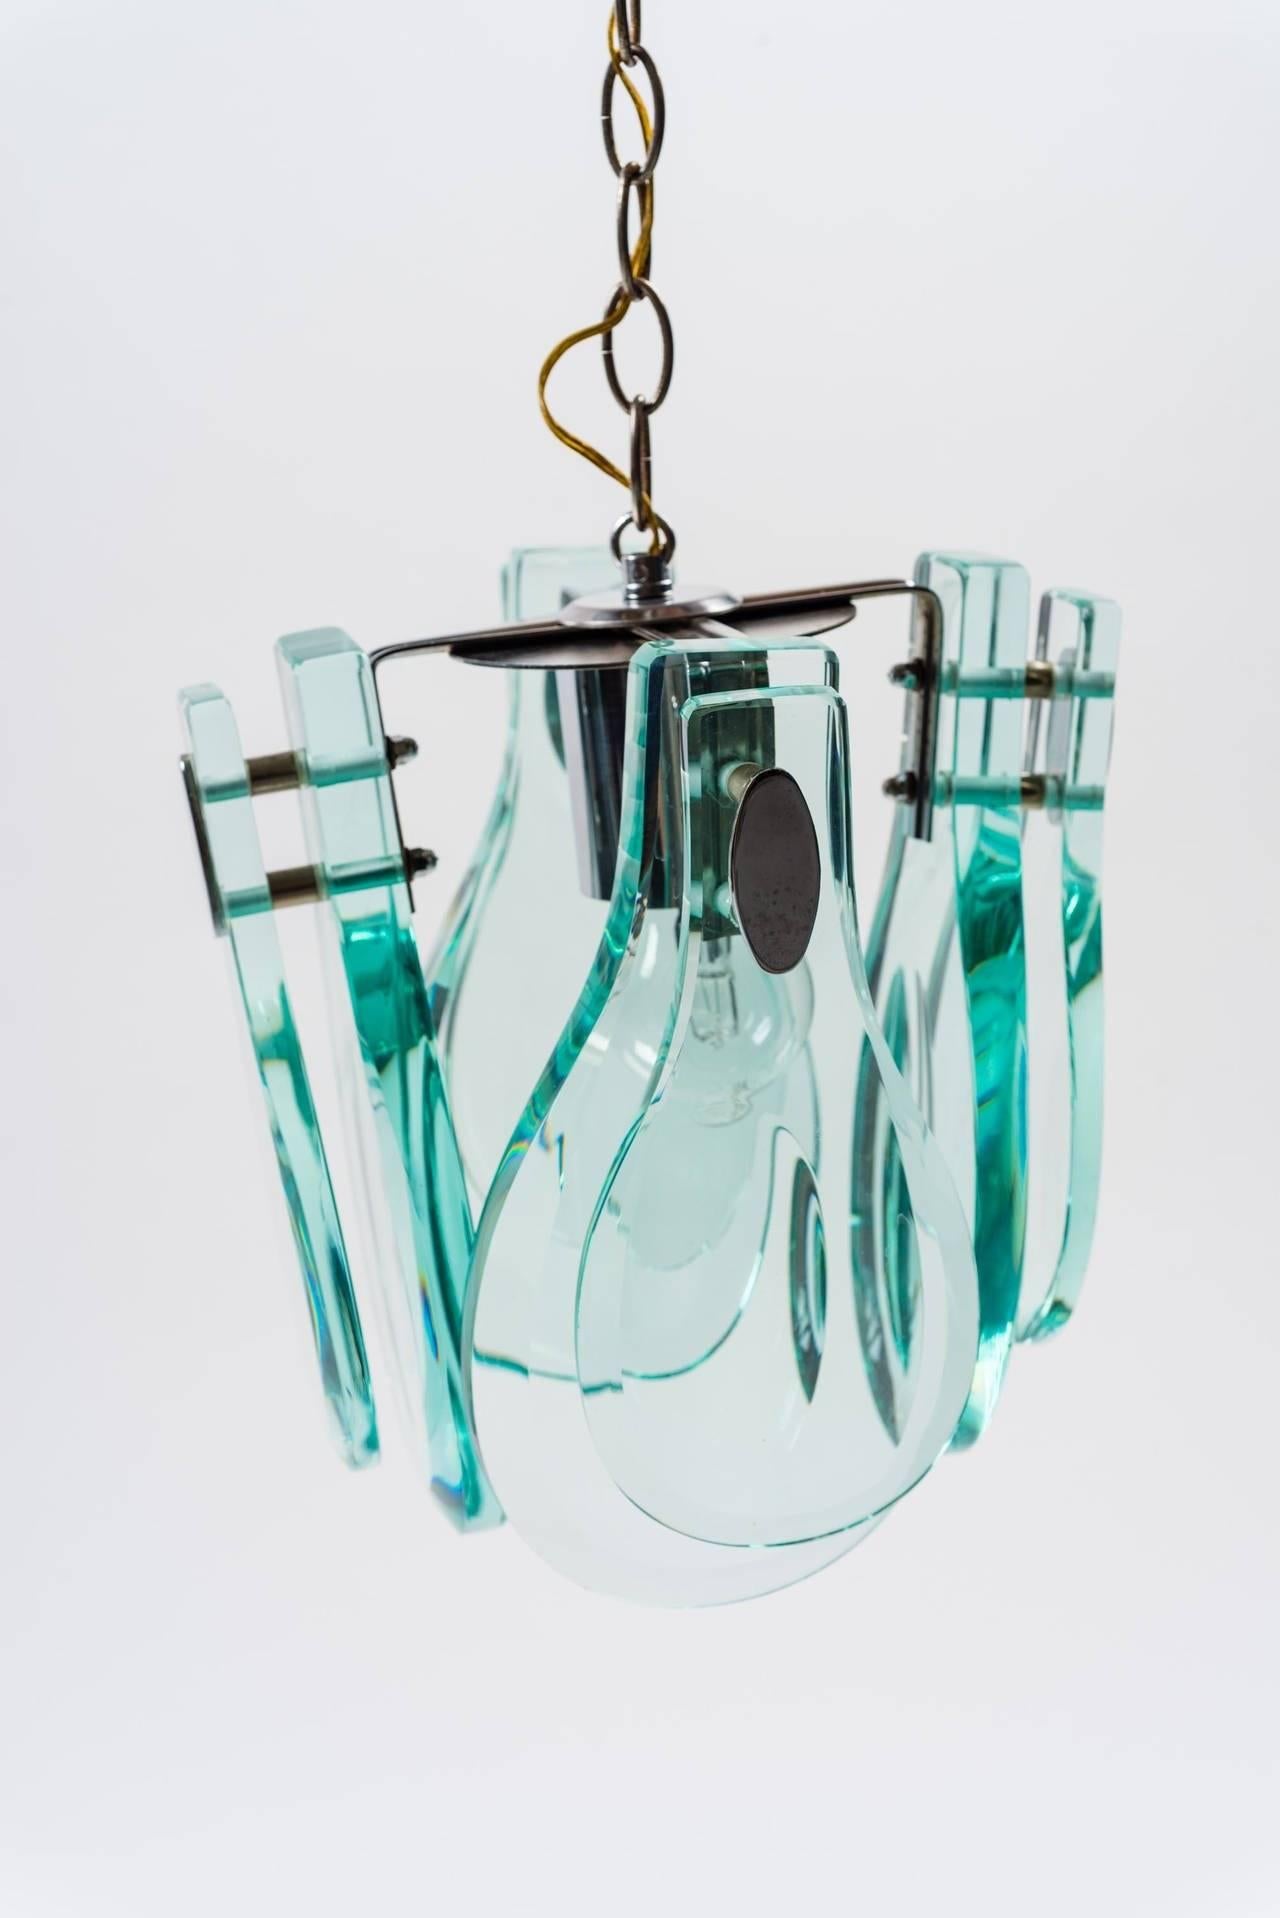 Hängeleuchte mit handgeschliffenem Glas Verde Nilo im Stil von Fontana Arte, Italien, 1970.